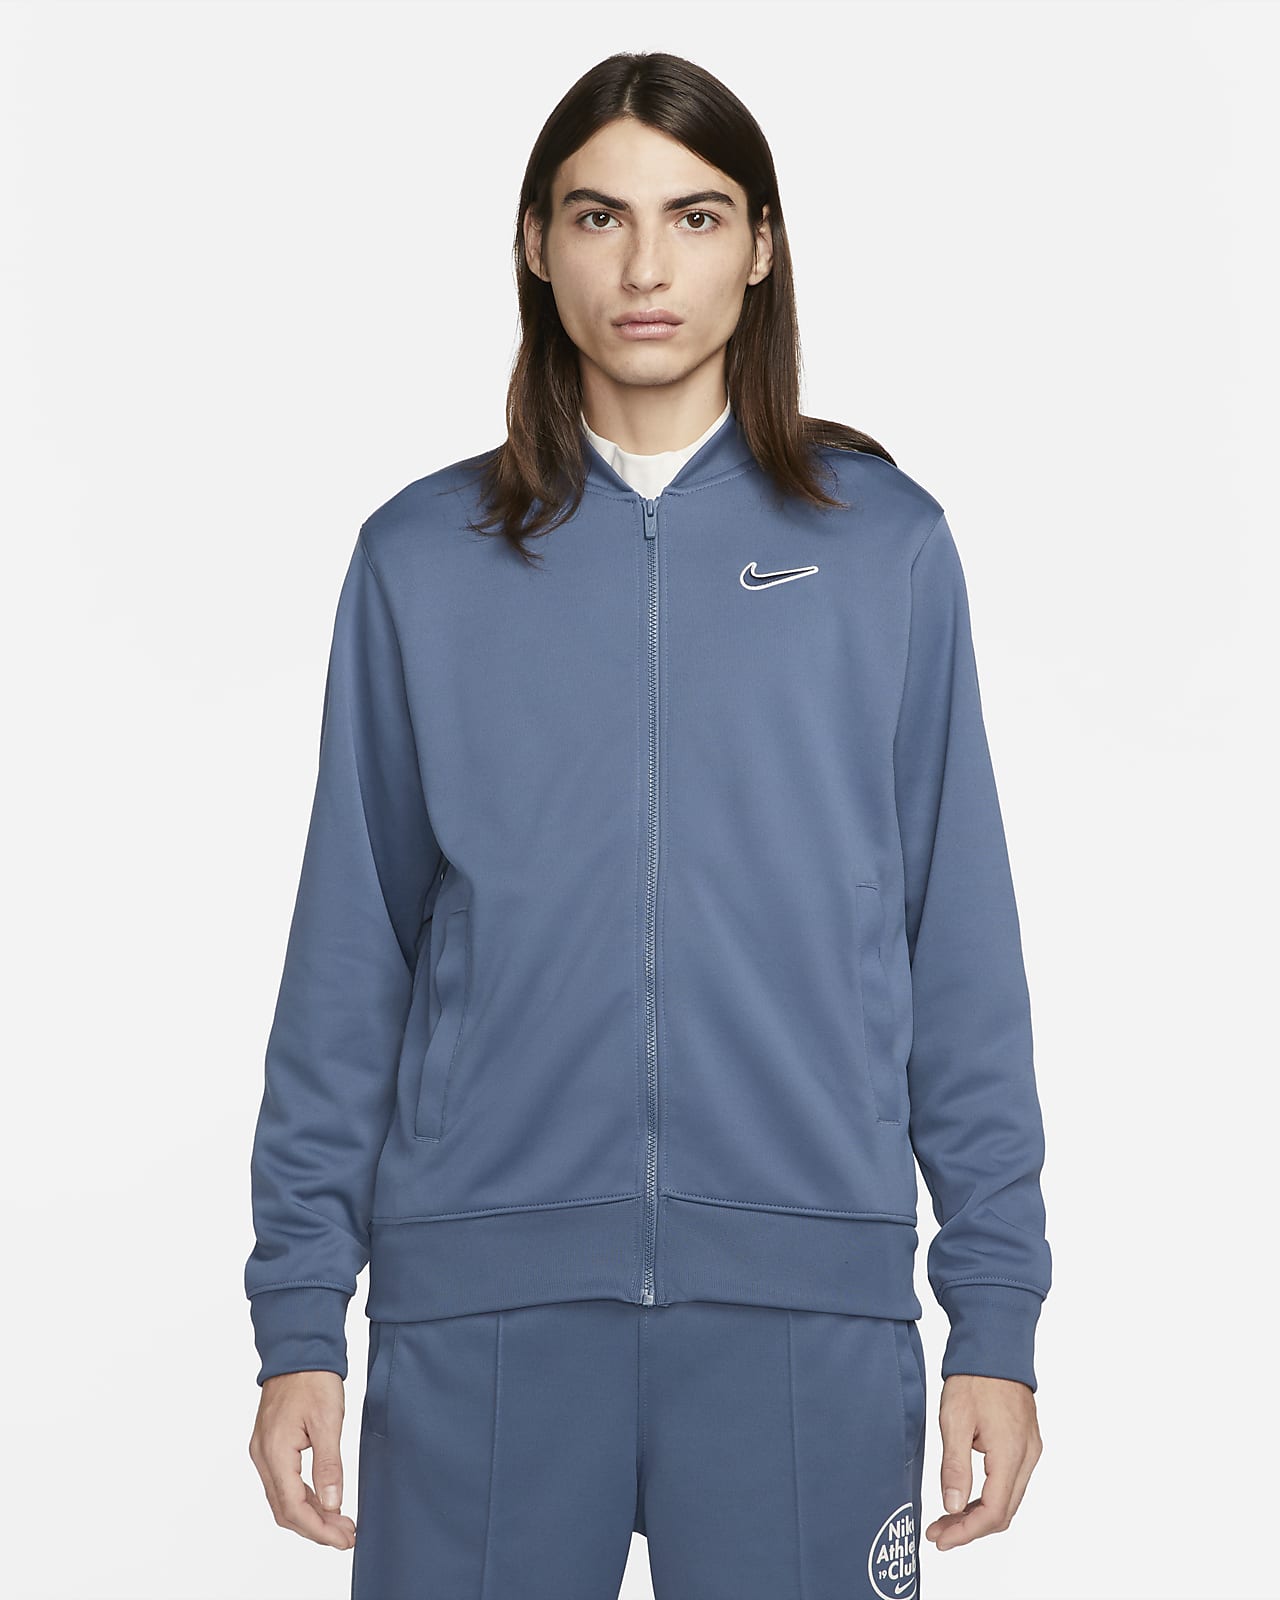 Nike Sportswear Herren-Bomberjacke